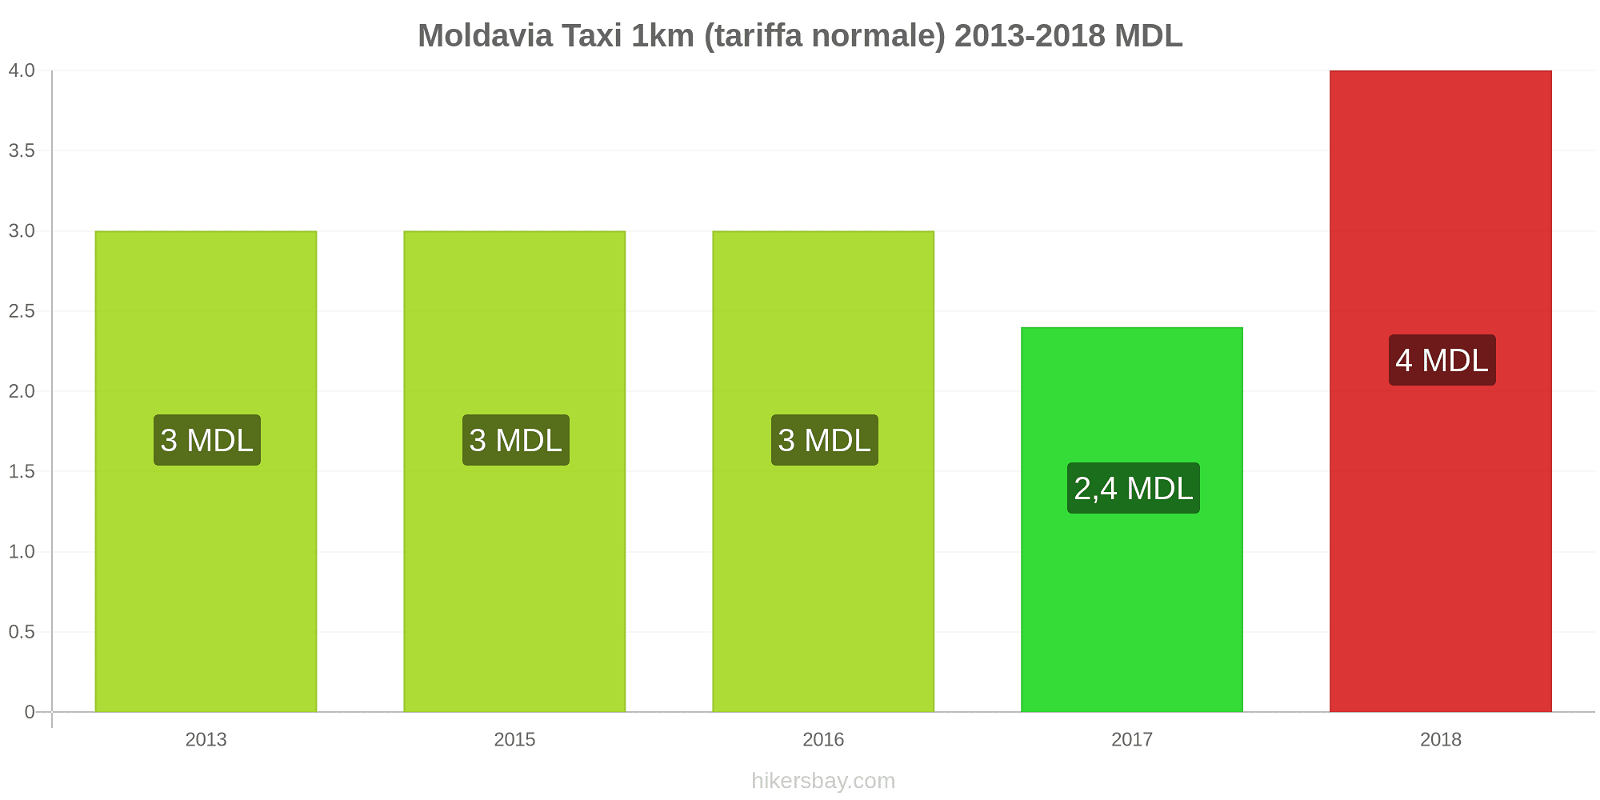 Moldavia cambi di prezzo Taxi 1km (tariffa normale) hikersbay.com